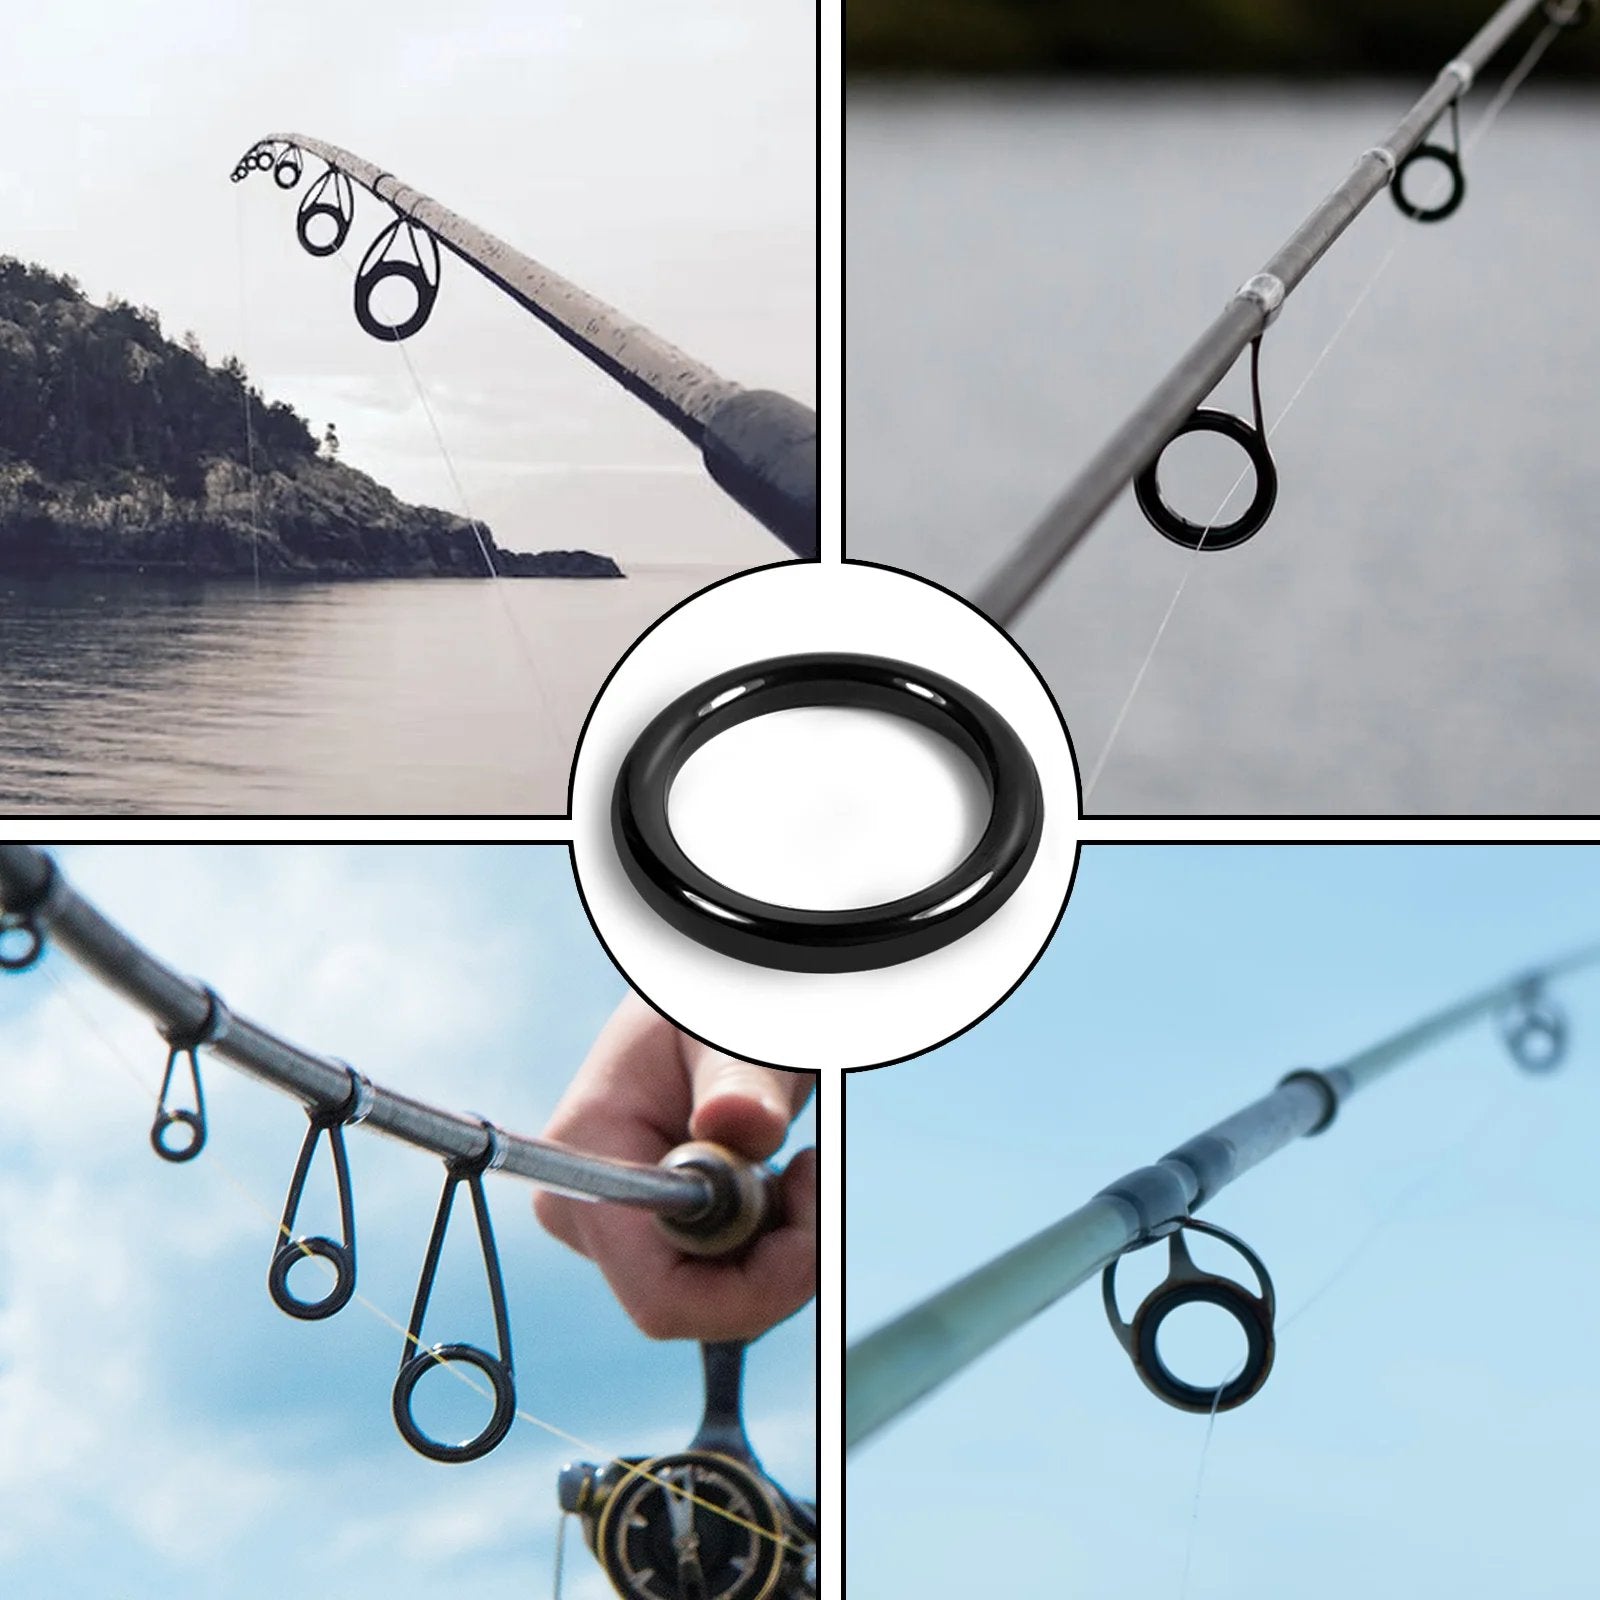 26Pcs Fishing Rod Repair Kit Ring Wear Resistant Ceramic Guide